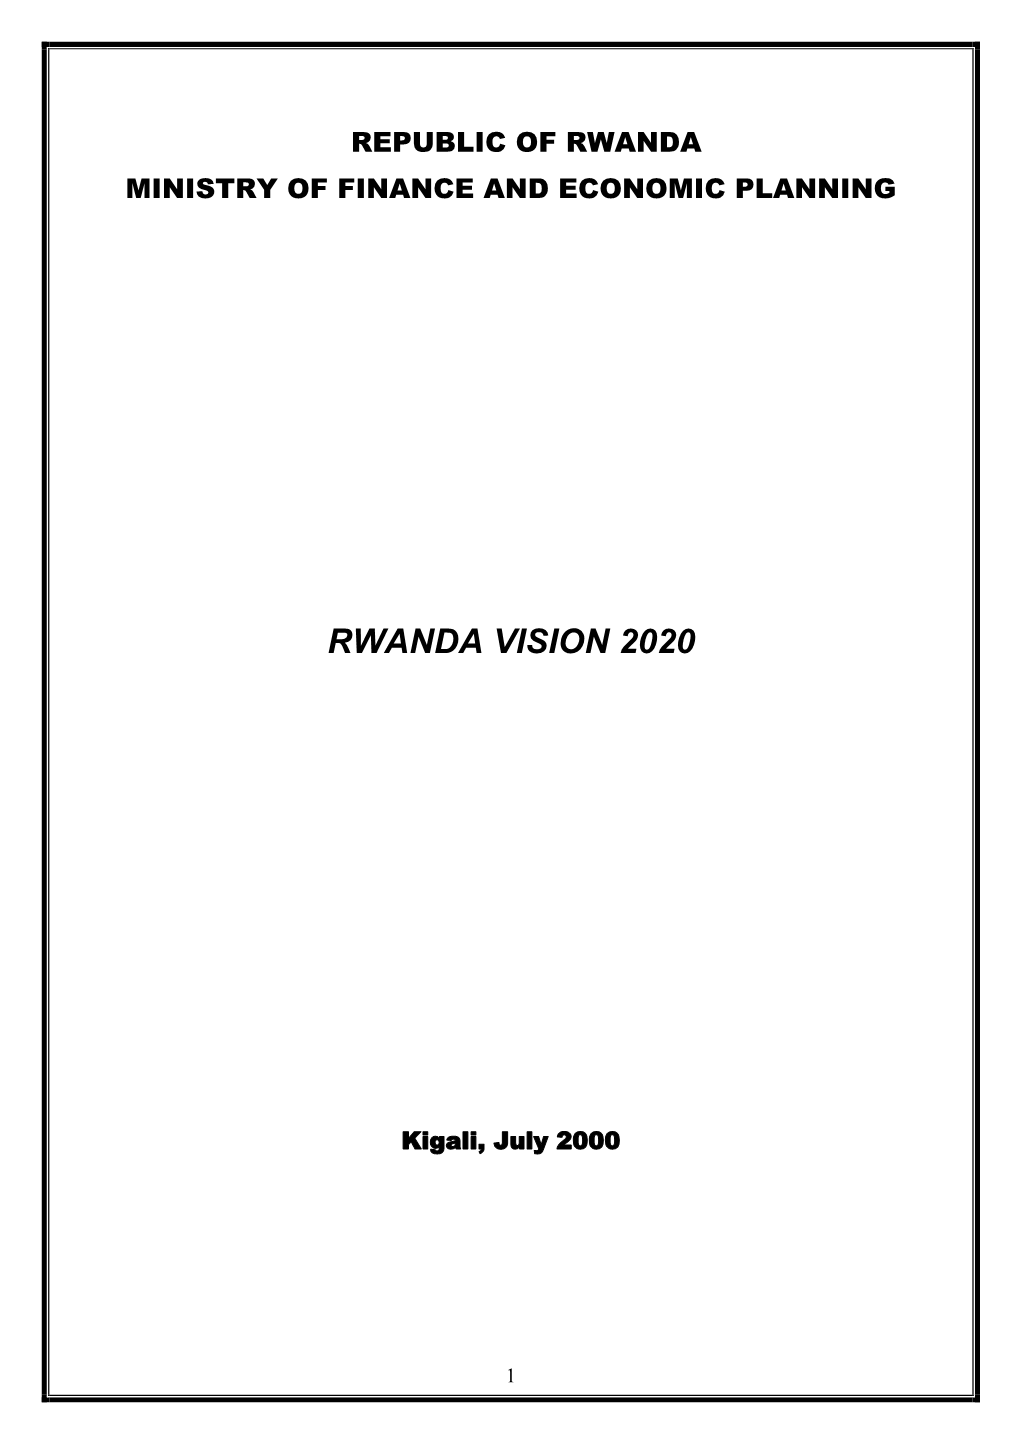 Rwanda Vision 2020